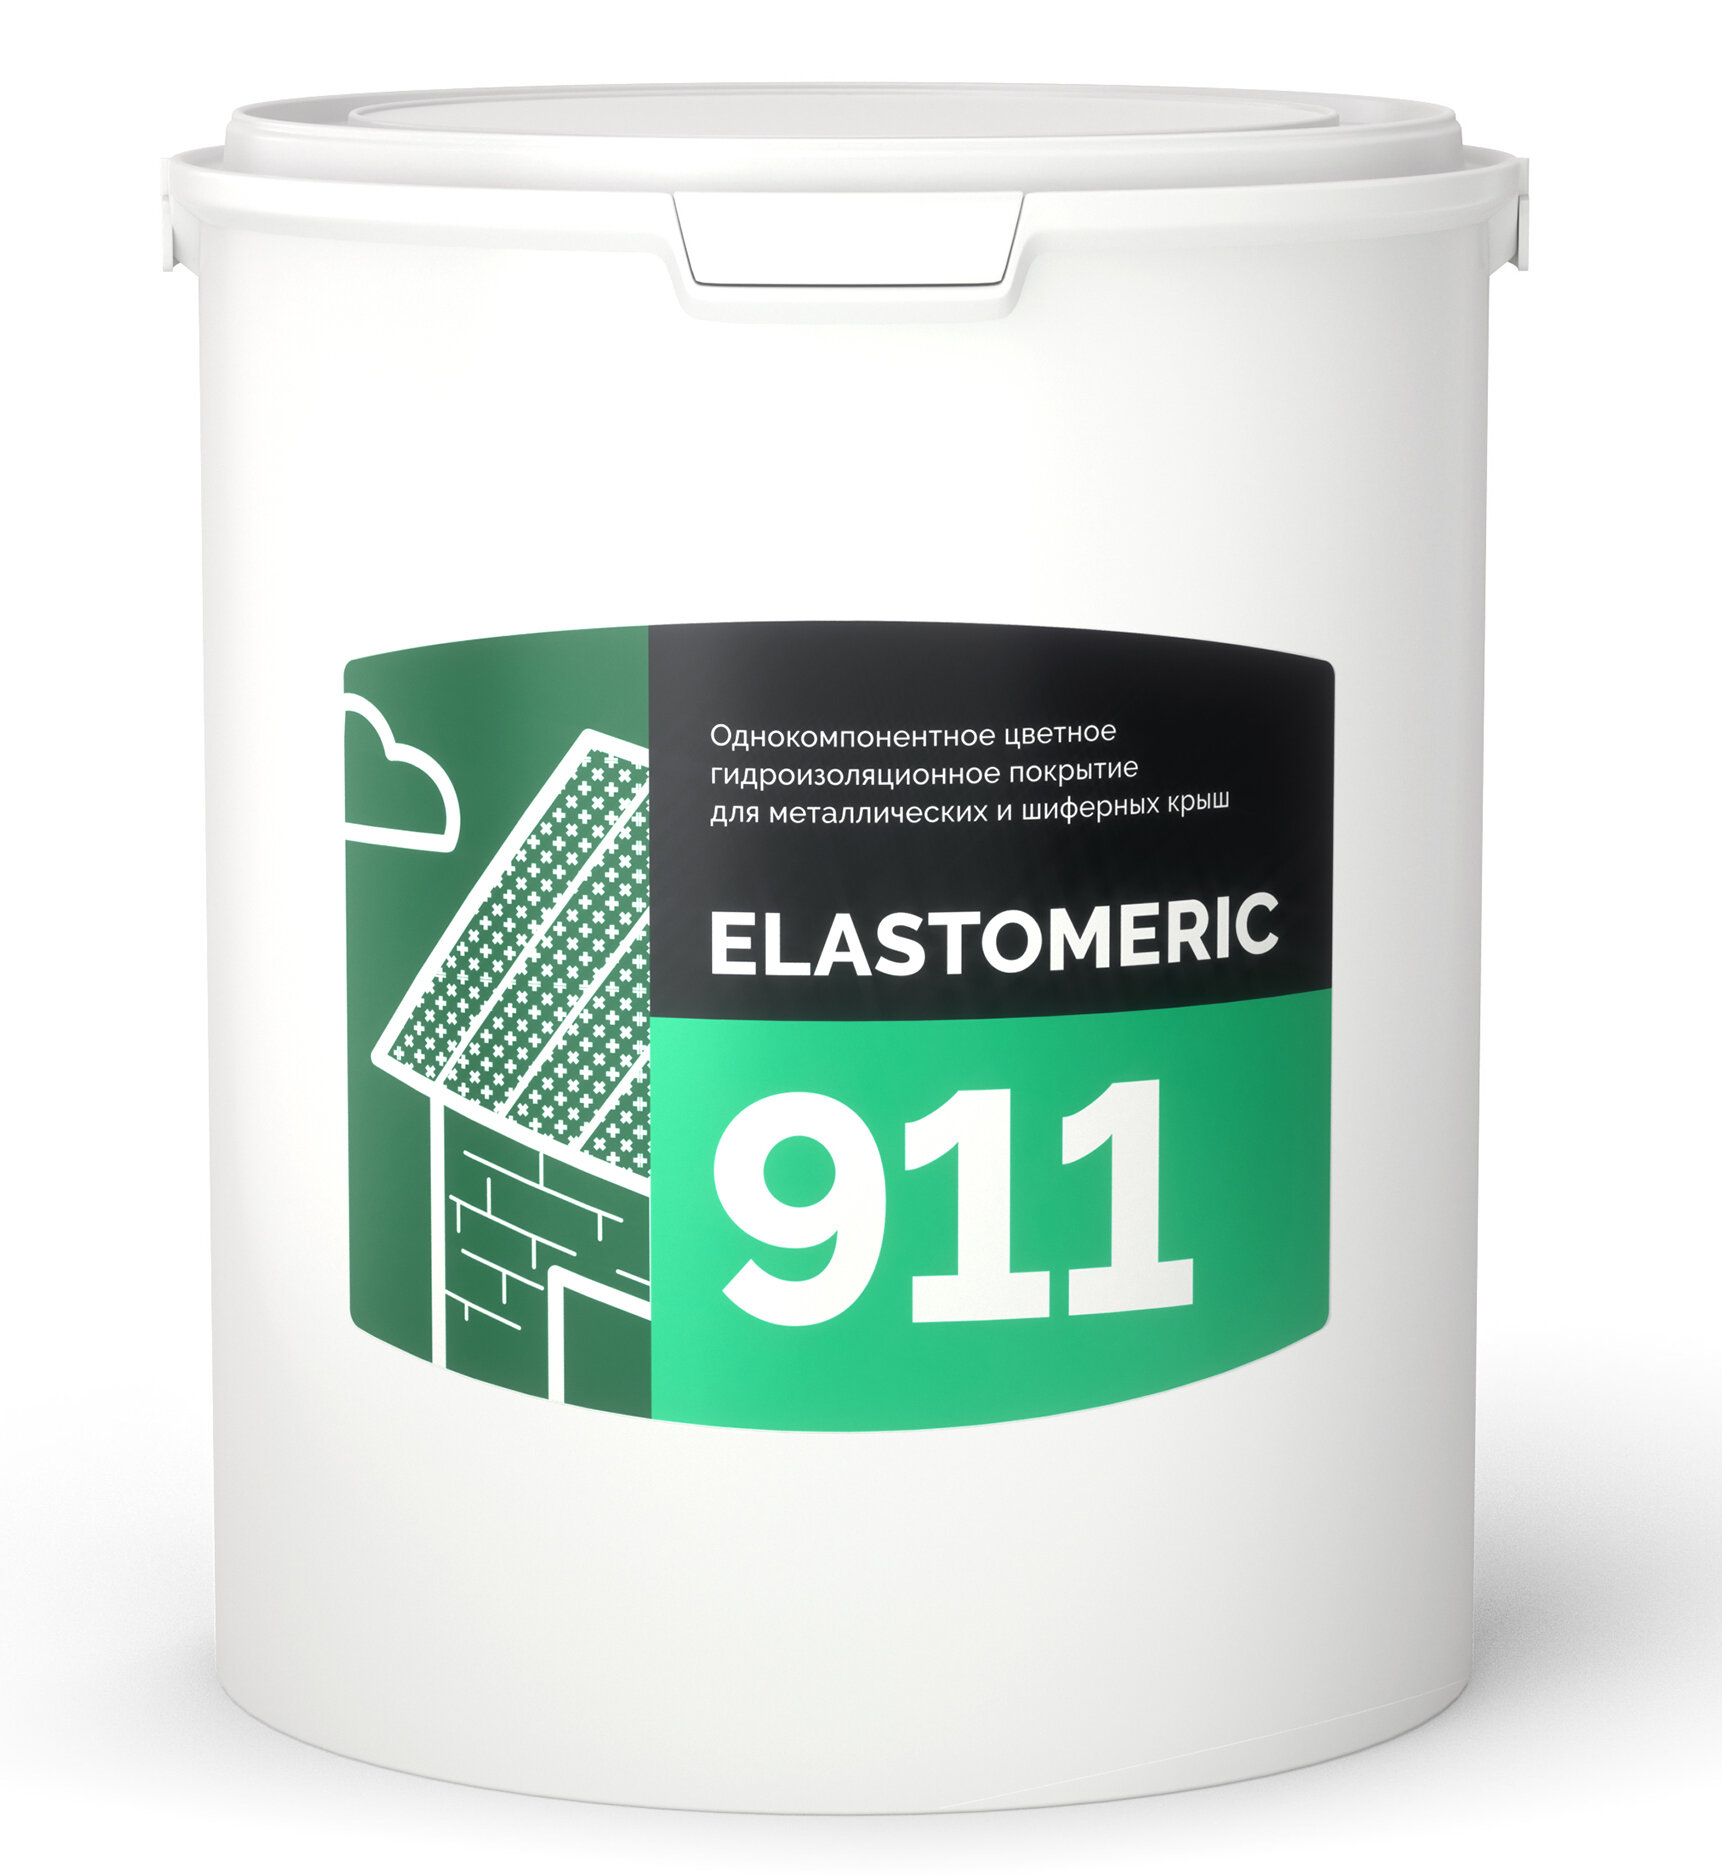 Эластичное покрытие для гидроизоляции и окраски металлических крыш Elastomeric-911, 6кг, RAL 6005 зеленый мох - фотография № 1